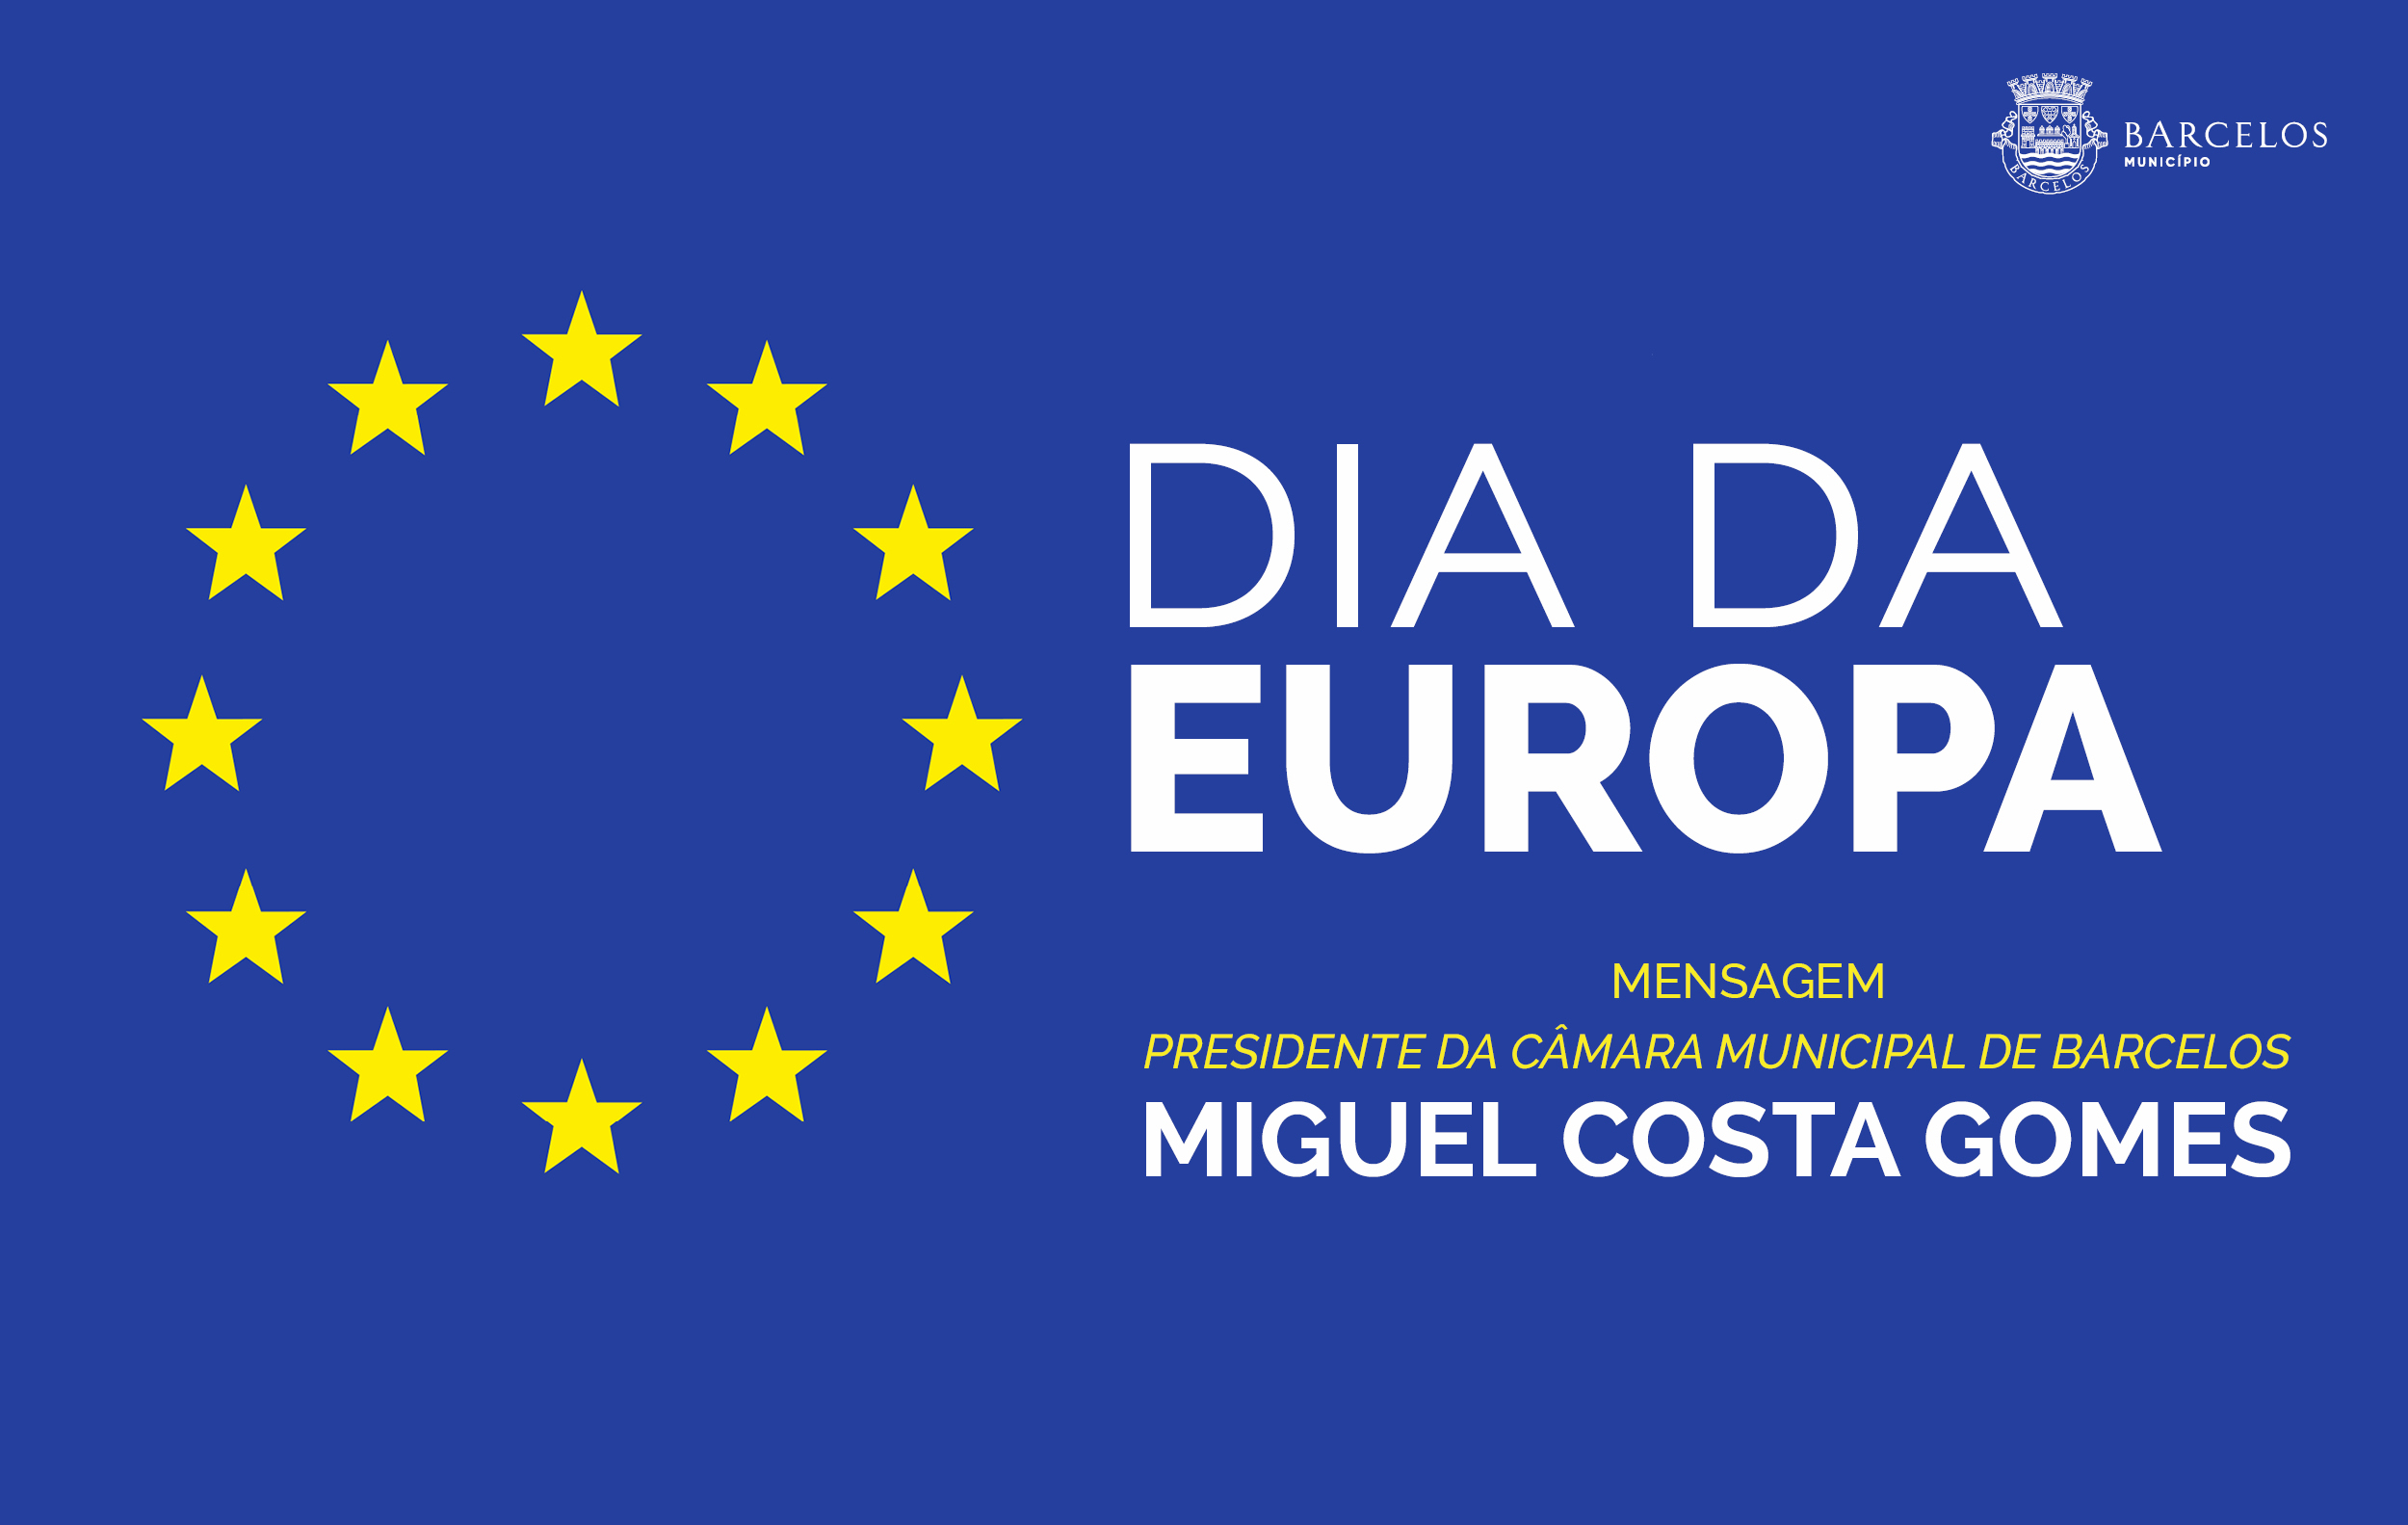 Mensagem do Presidente da Câmara Municipal de Barcelos no Dia da Europa